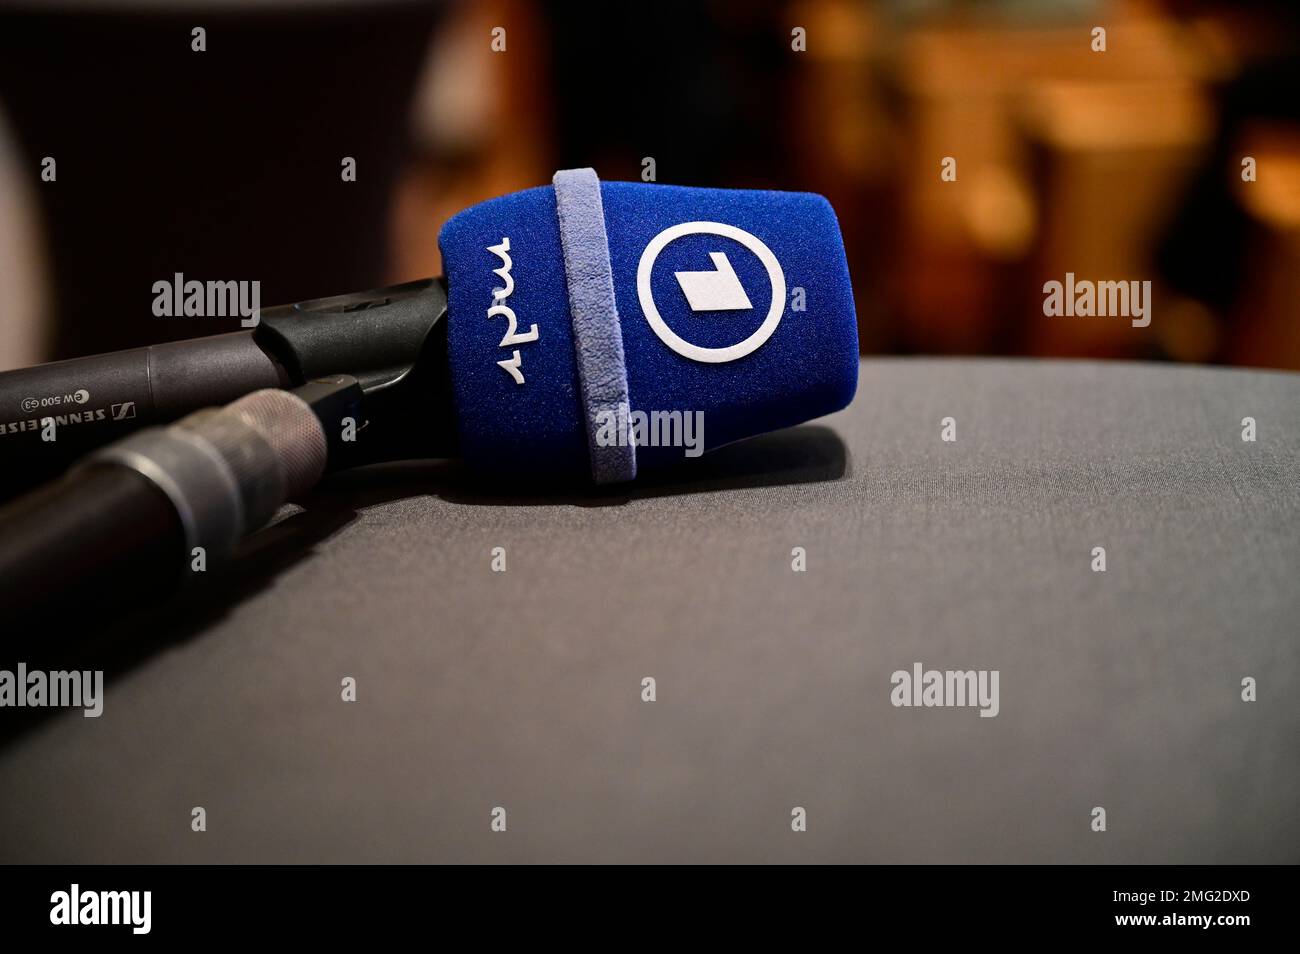 Themenbild, Symbolfoto, die öffentlich-rechtlichen Sender, wie ARD, ZDF, MDR, Deutschlandradio, Das Erste, Abo, ARD Brennpunkt, ARD-App, logo ARD, ARD Banque D'Images